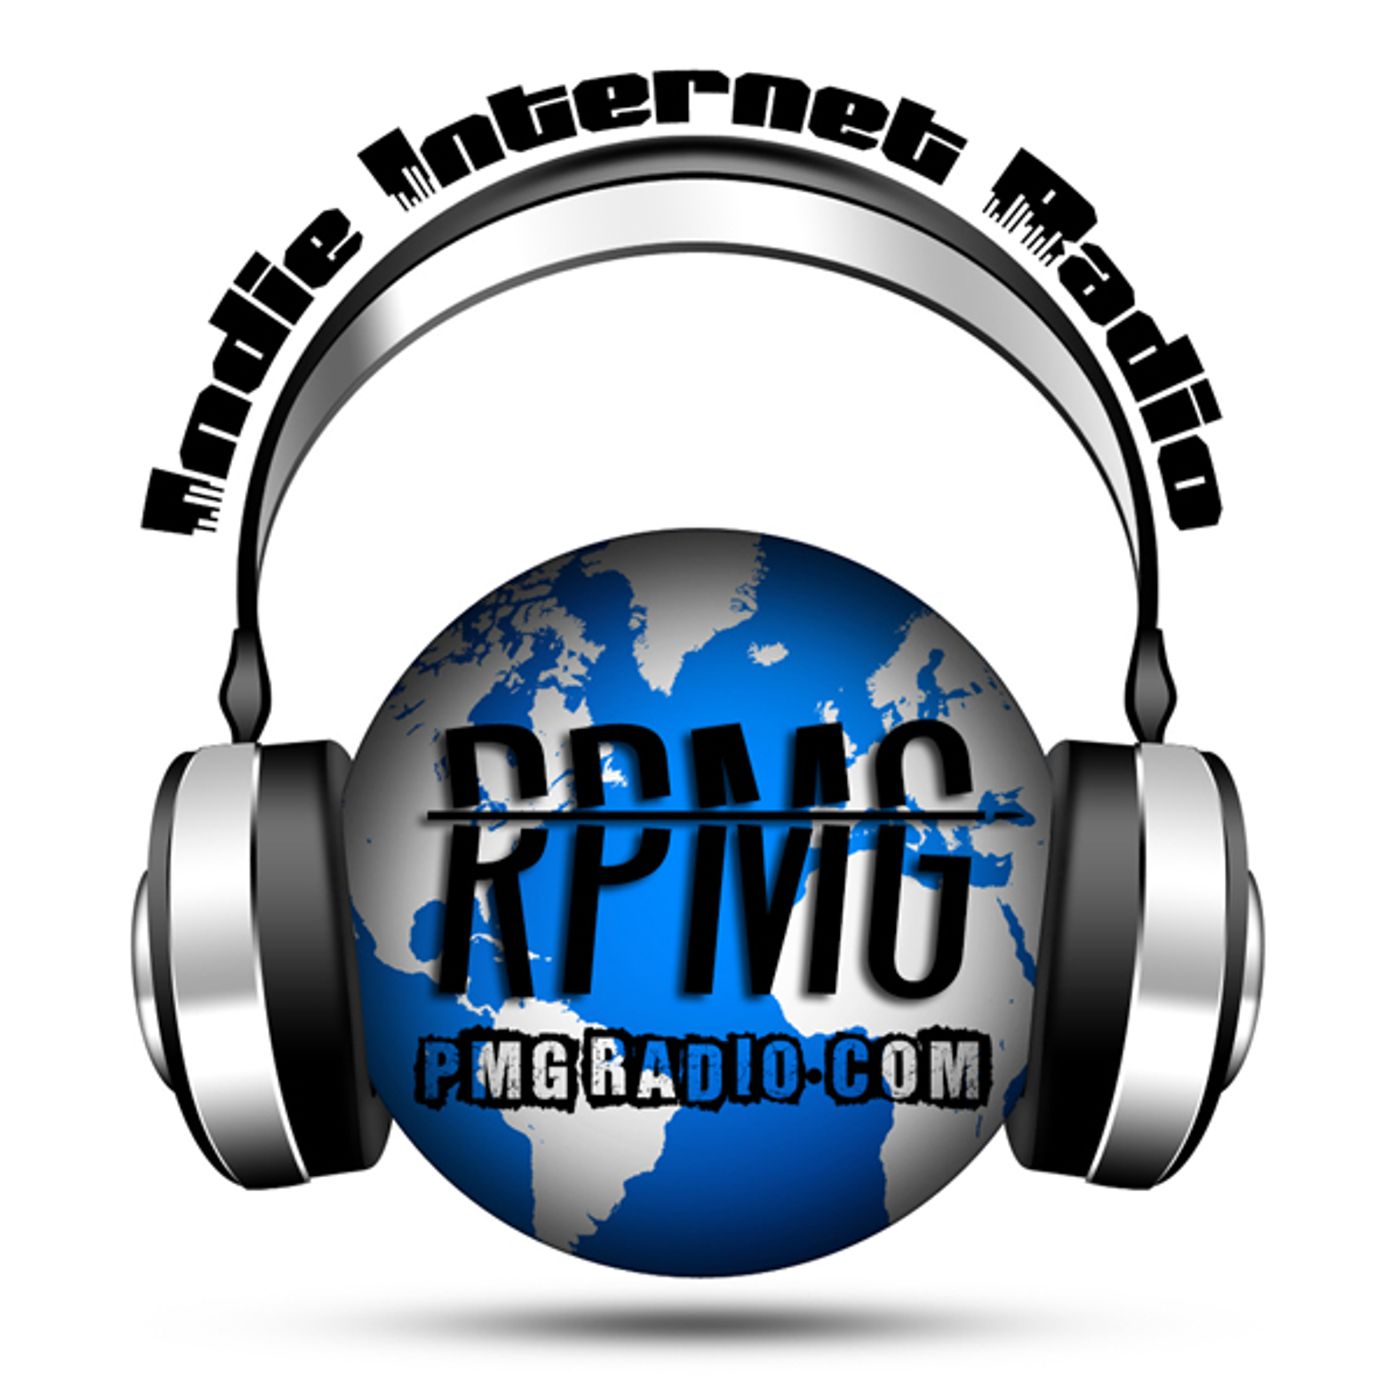 PMG Radio | RPMG Broadcasts